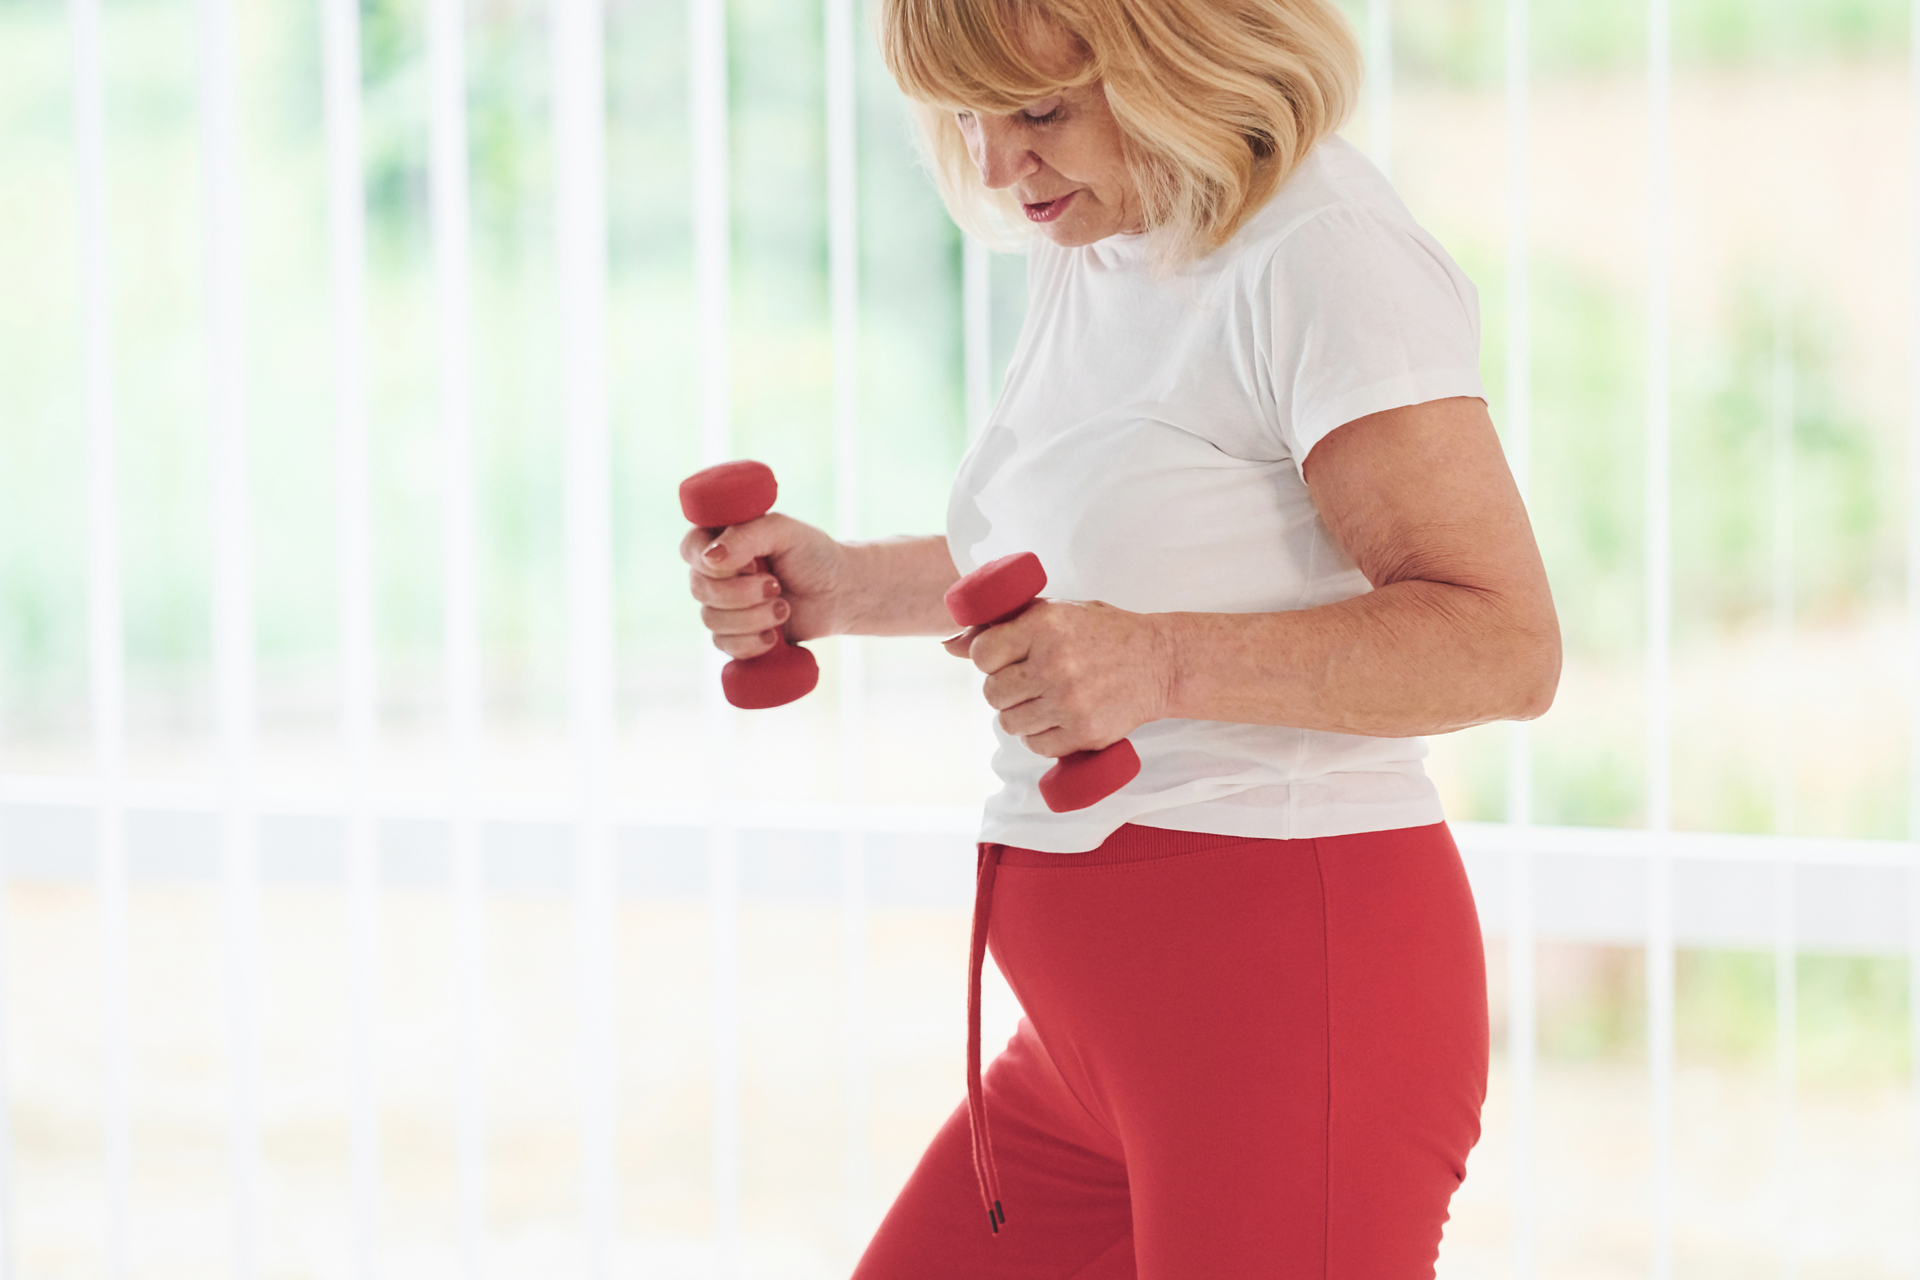 Na obrazku widać starszą panią, która ćwiczy w swoim domu. Pani wykonywany ćwiczenia skupiające się na poprawie elastyczności i siły mięśni oraz utrzymaniu zdrowego kręgosłupa. Ćwiczenia te można wykonywać w domu przy użyciu podstawowych przyborów, takich jak hantle, piłka gimnastyczna czy mata do ćwiczeń. Pani wydaje się być w dobrej formie fizycznej i pełnej energii, co pokazuje, że ludzie starsi mogą cieszyć się aktywnością fizyczną i zdrowym trybem życia. Obrazek może stanowić inspirację dla osób starszych, które chcą dbać o swoje zdrowie i kondycję fizyczną w domowym zaciszu.